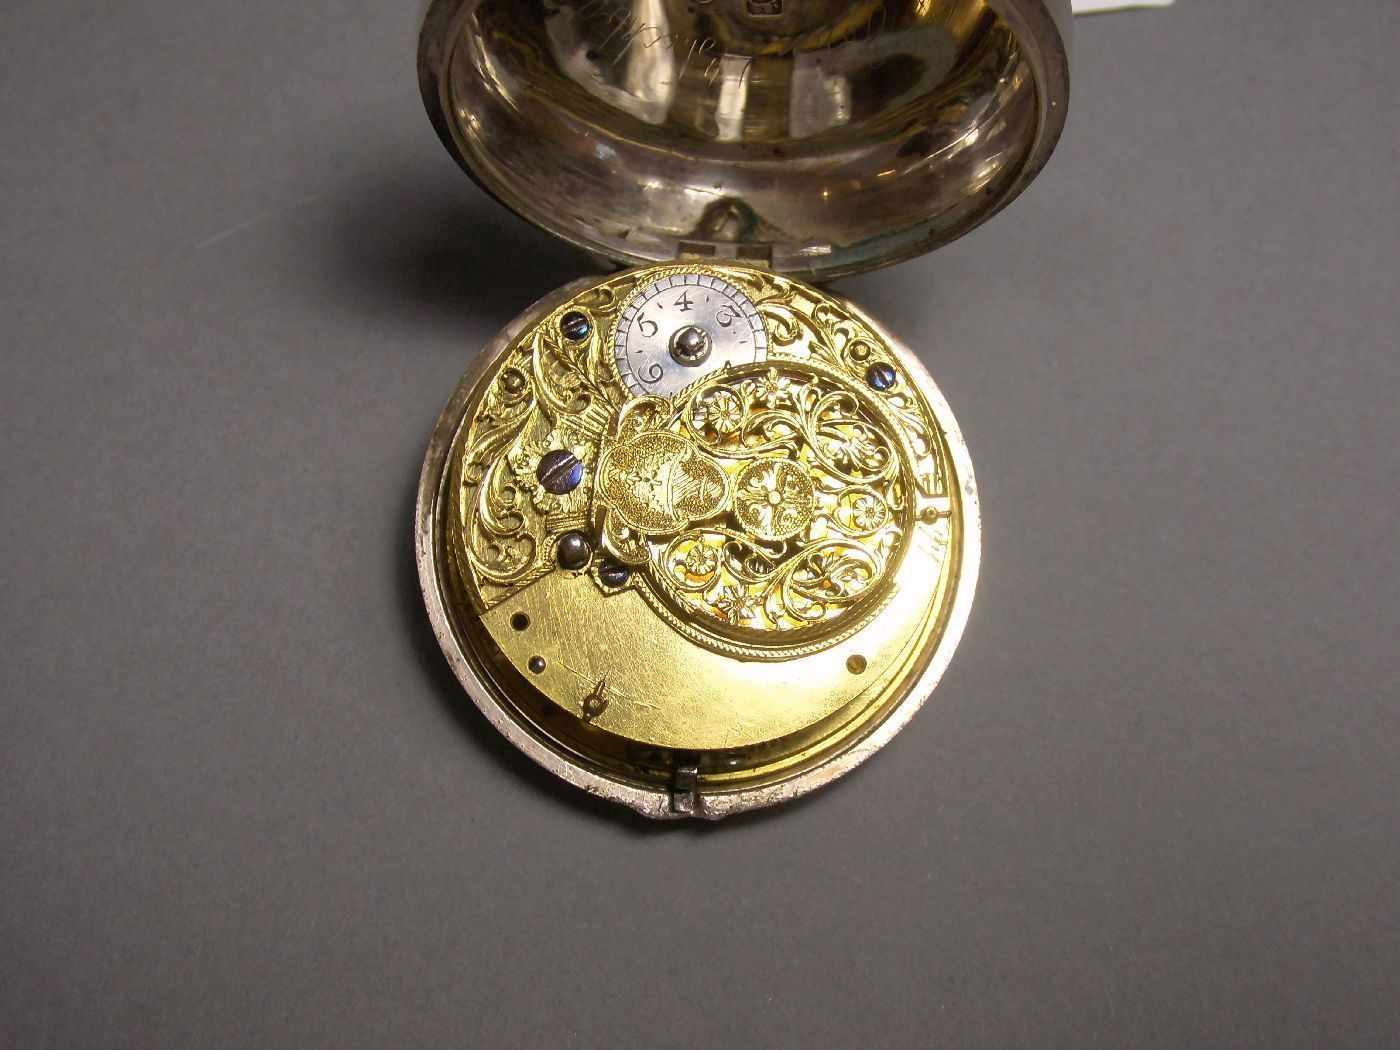 SPINDELTASCHENUHR / pocketwatch, im Silbergehäuse, London 1864, mit identischem Übergehäuse, Meister - Image 5 of 8